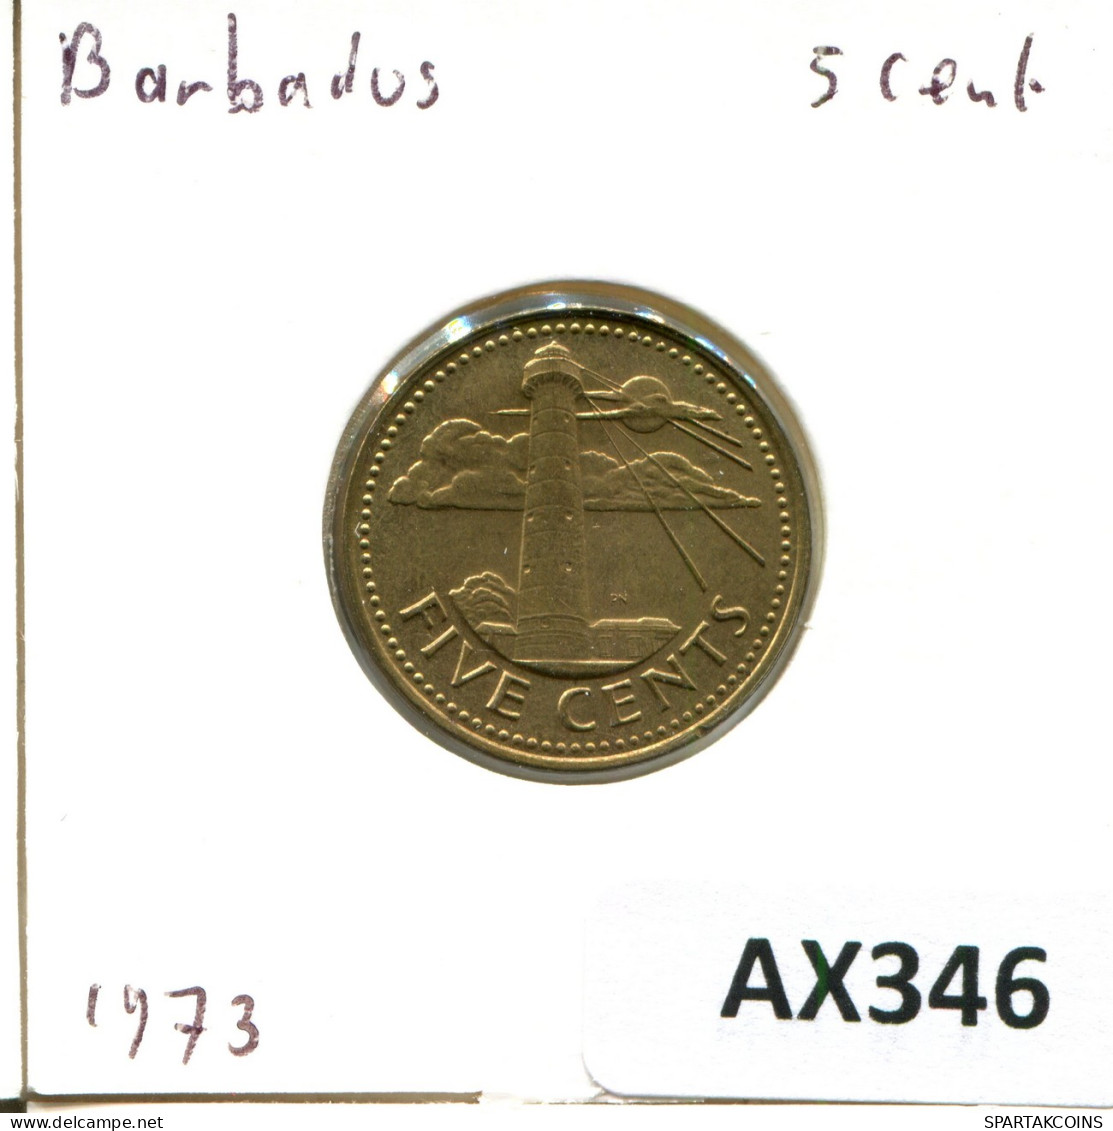 5 CENTS 1973 BARBADOS Moneda #AX346.E - Barbades